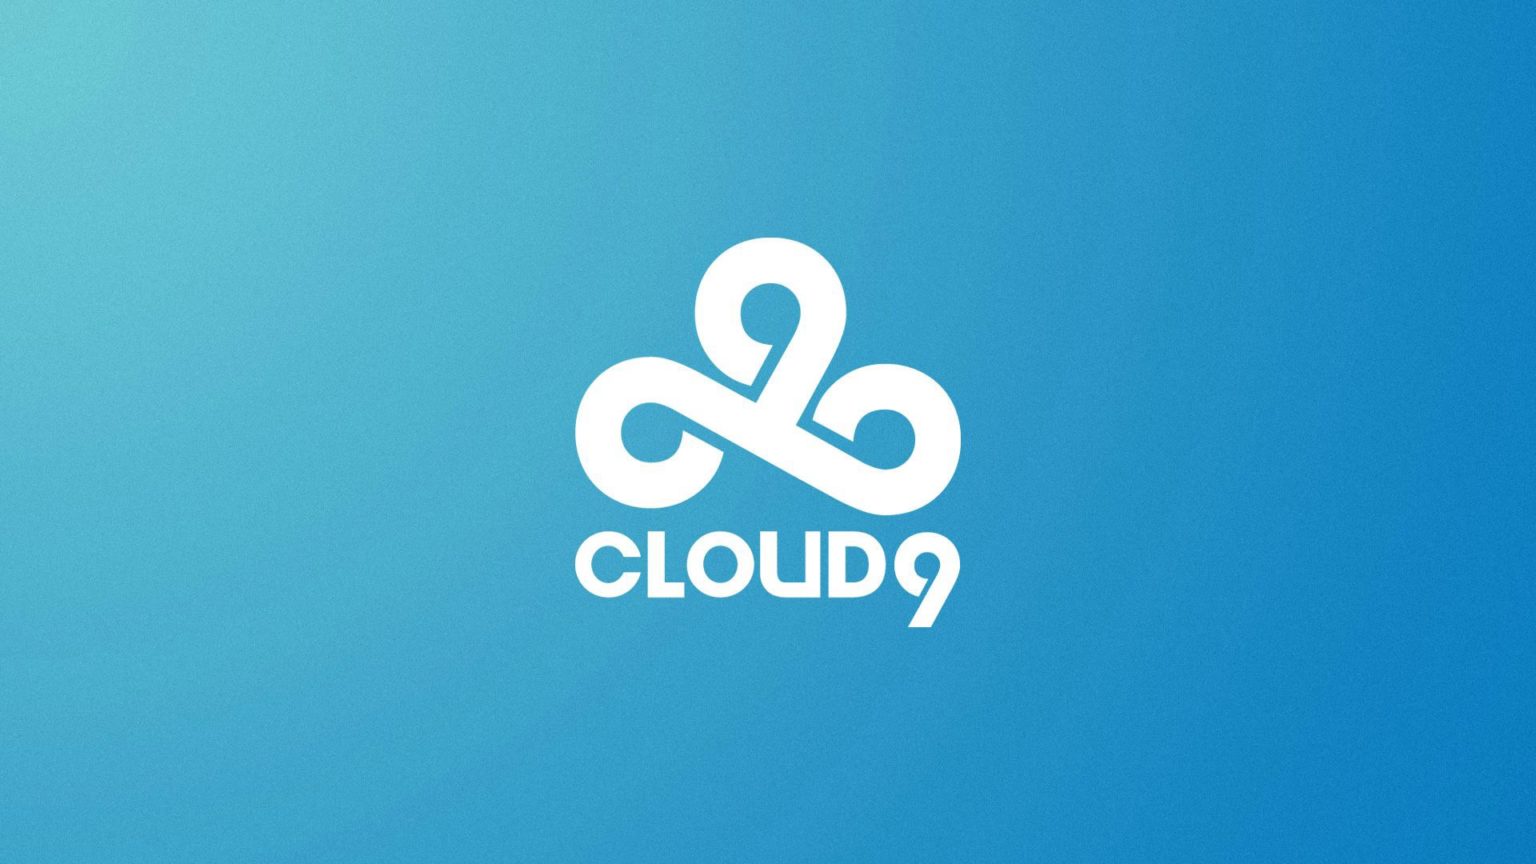 cloud9, na vct 2022 açılış maçında 100 thieves'i mağlup etti